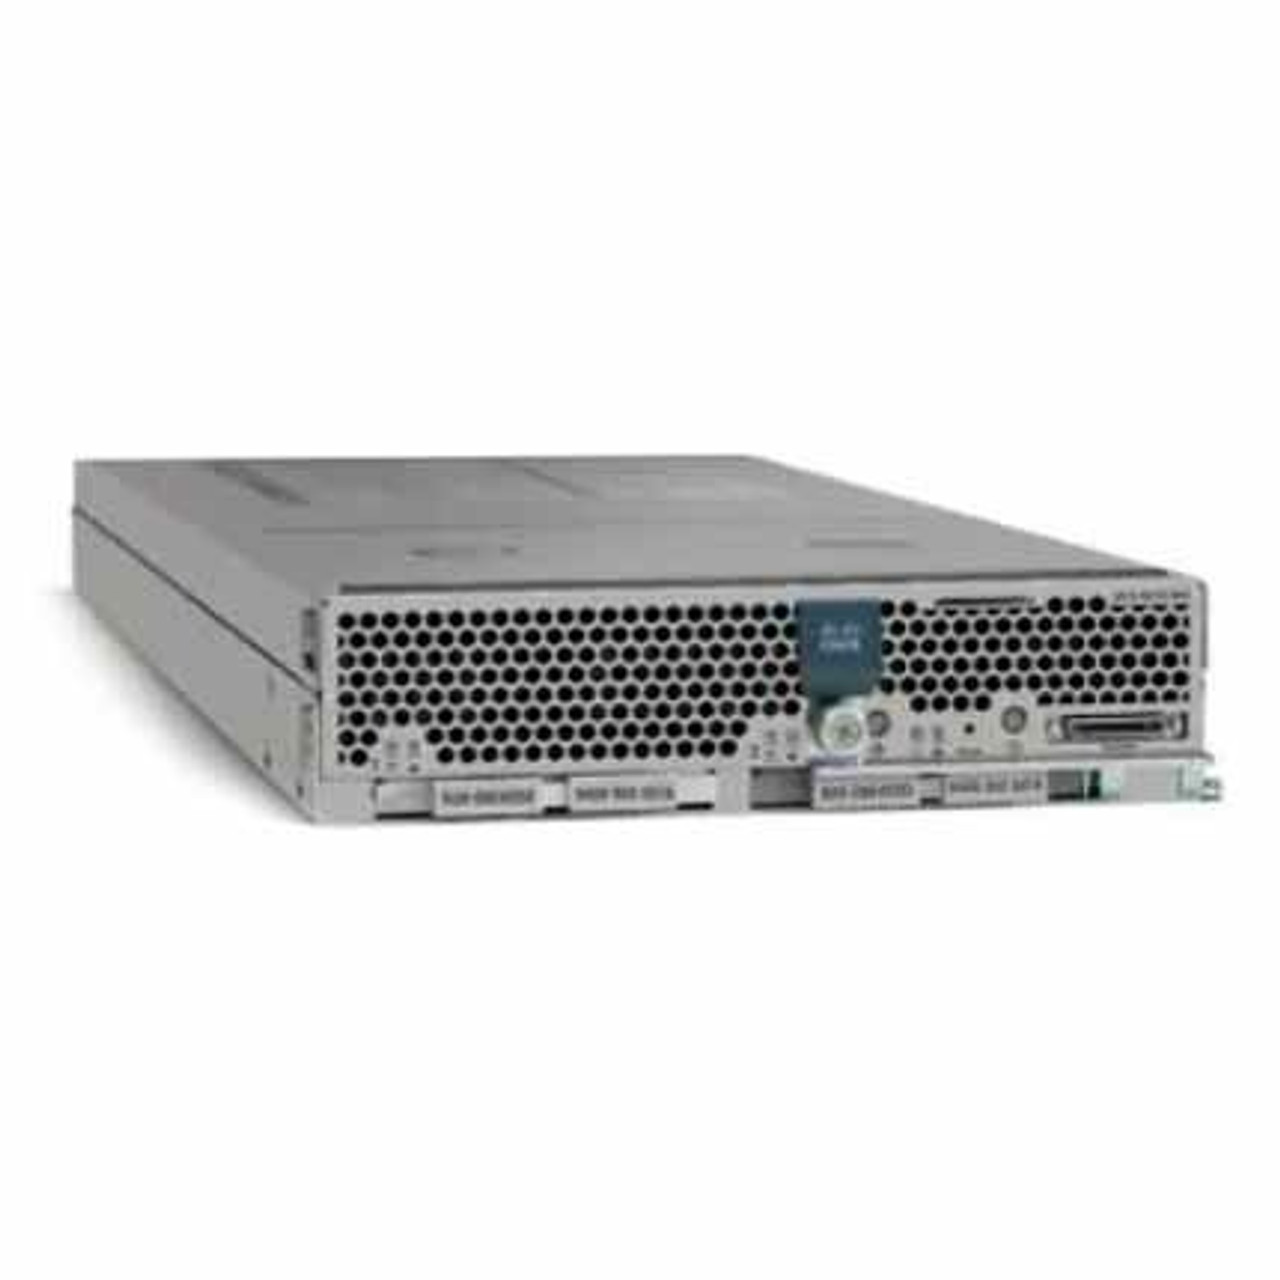 Cisco UCS B230 M2 Blade Server